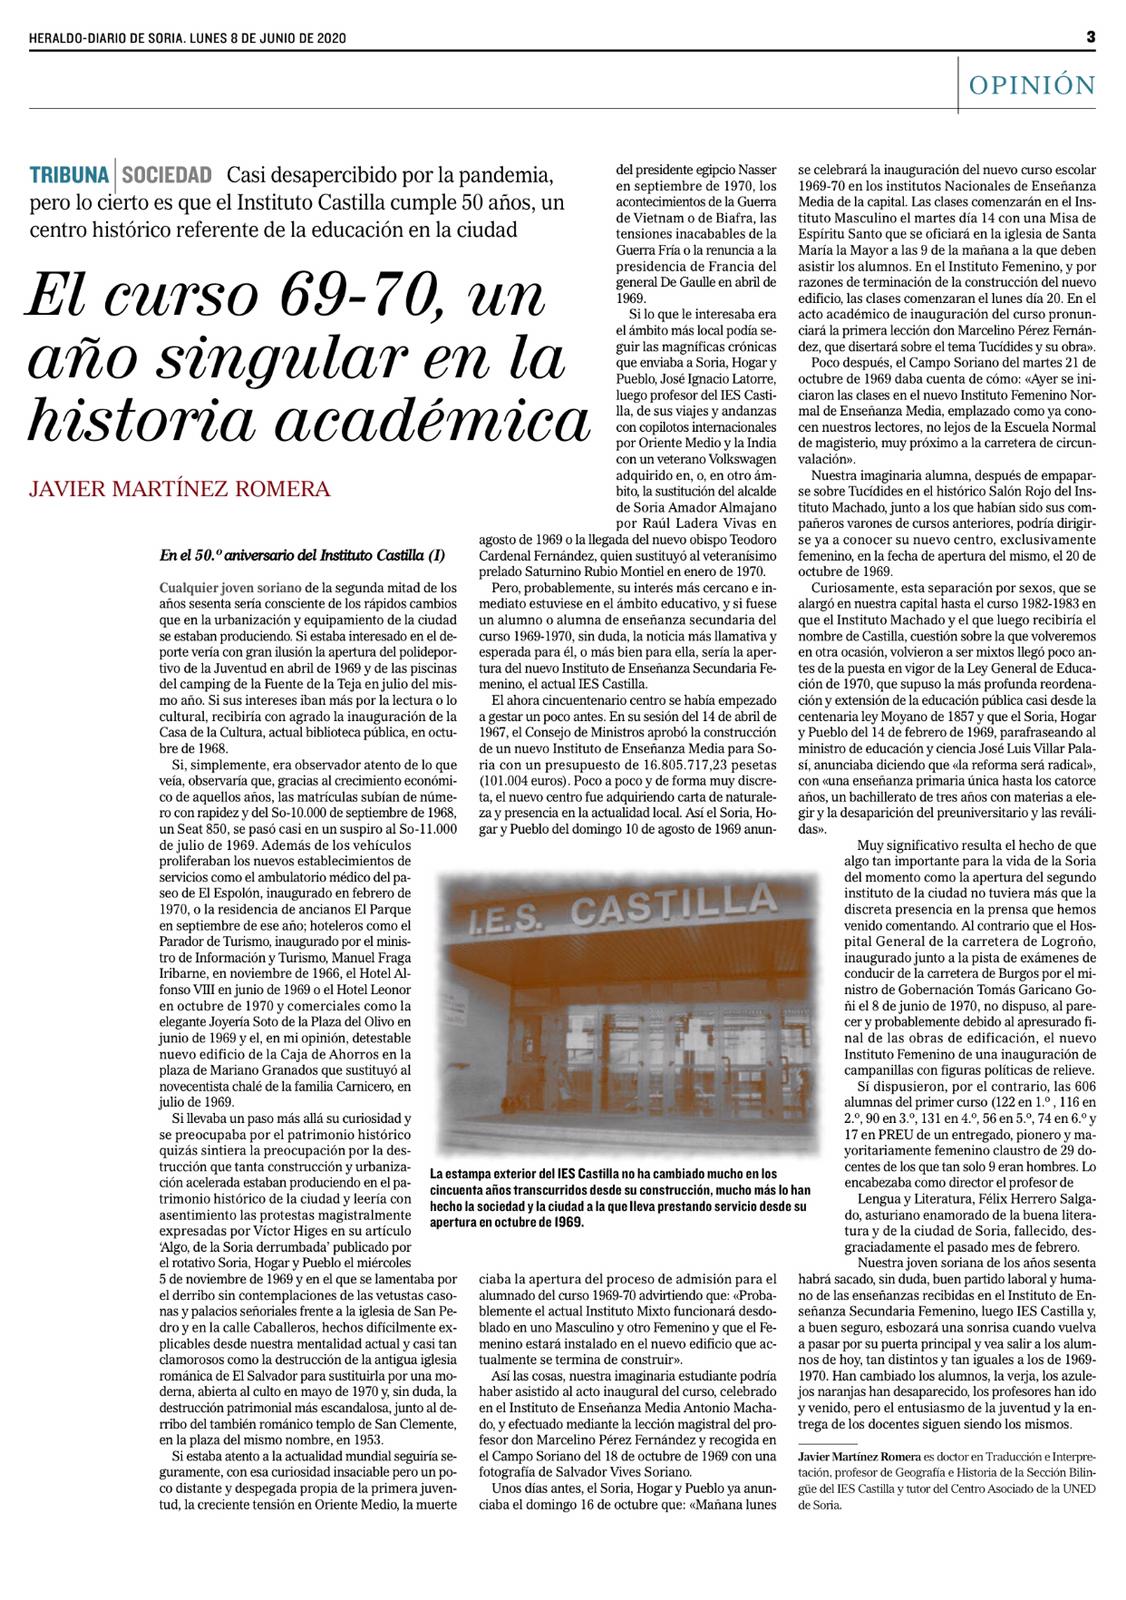 2020-06-08 Heraldo-Diario 50años1 Javier M. Romera